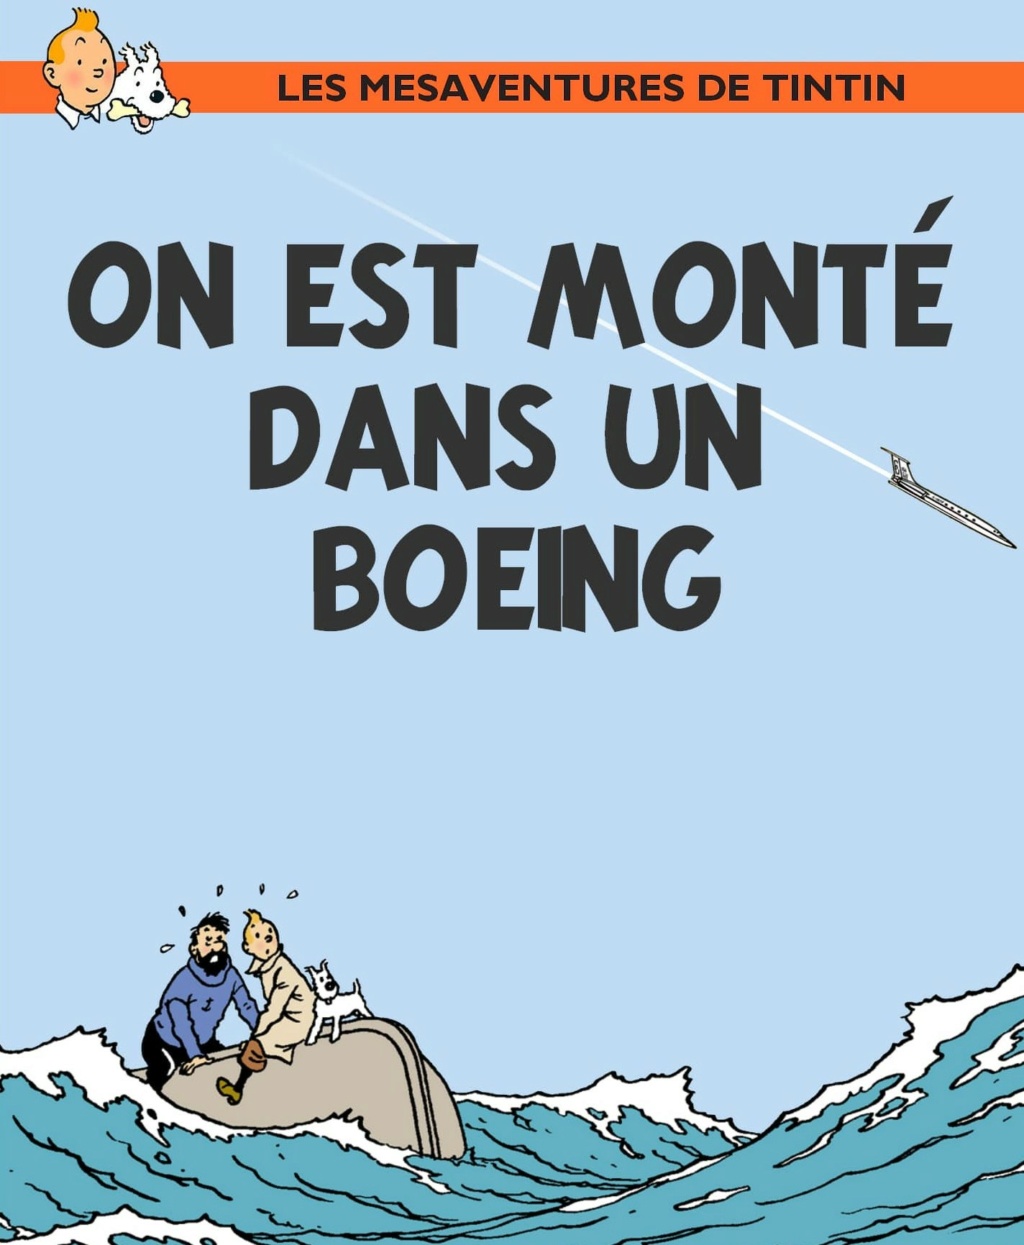 Les Aventures de Tintin constituent une série de bandes dessinées créée par Gu_849